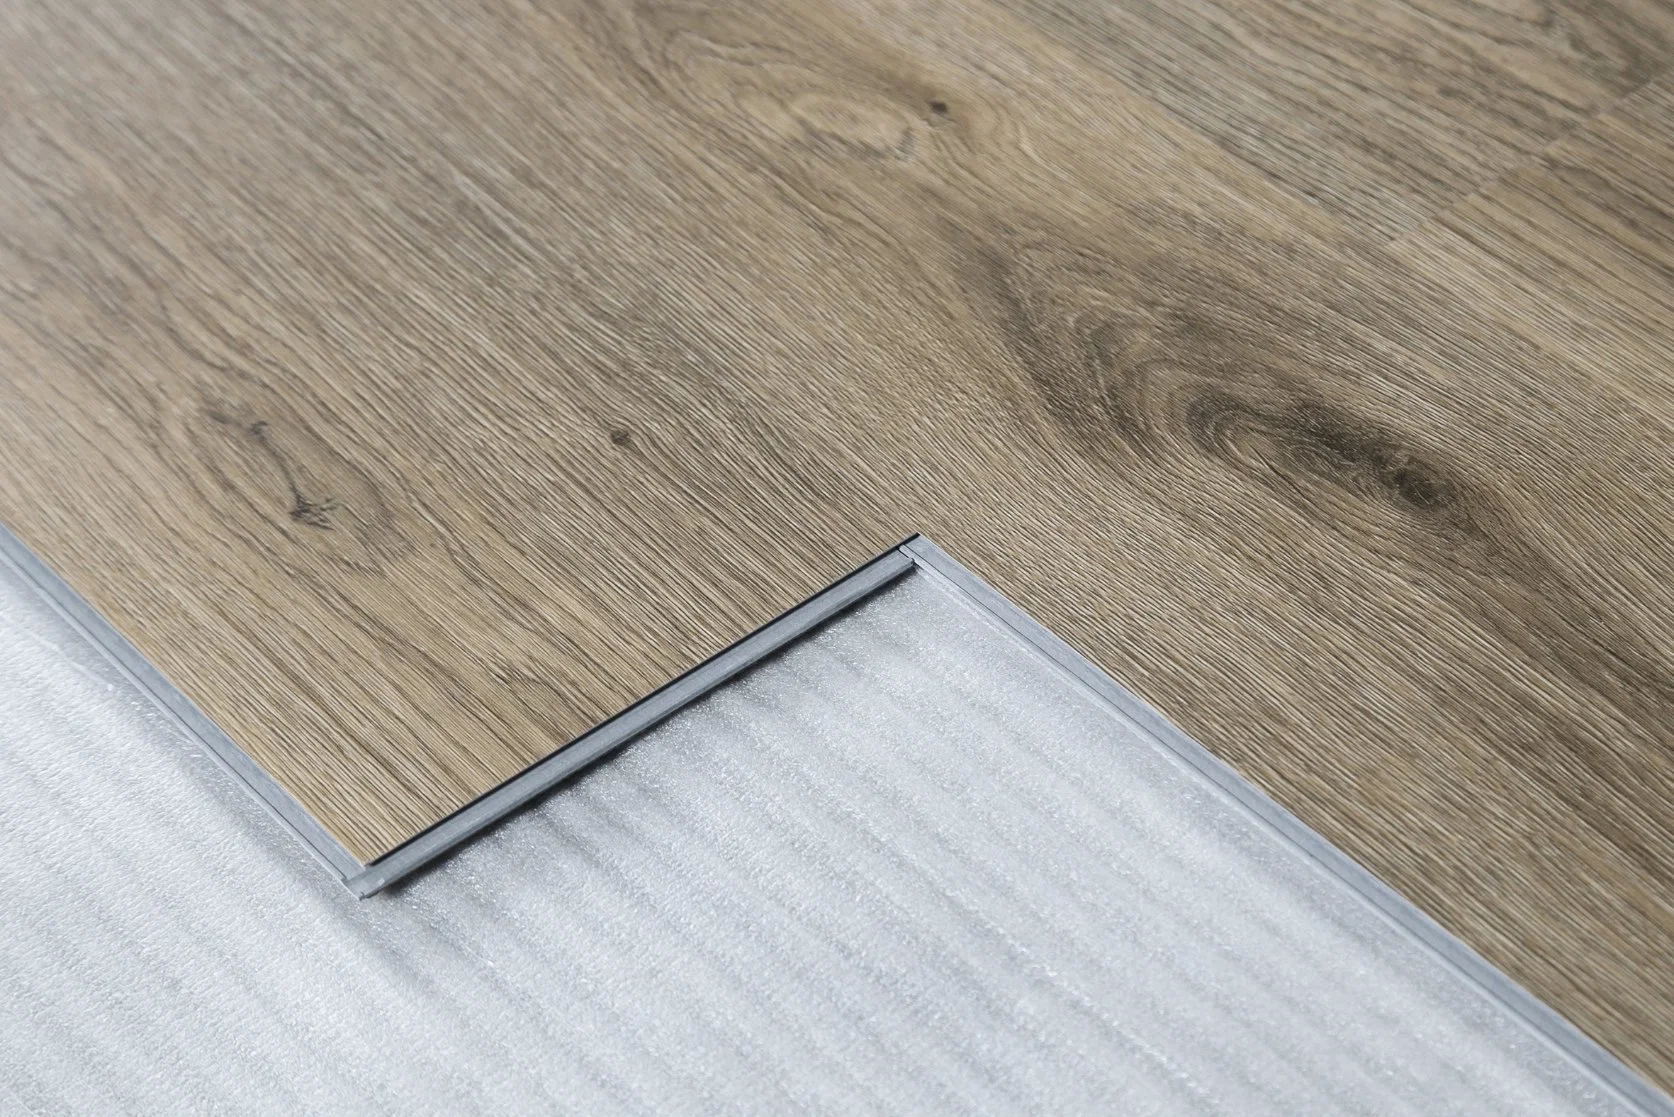 Stone composto de plástico e auto-adesivo Plank Vinil estilo madeira PVC plástico piso piso com preço competitivo Qualidade